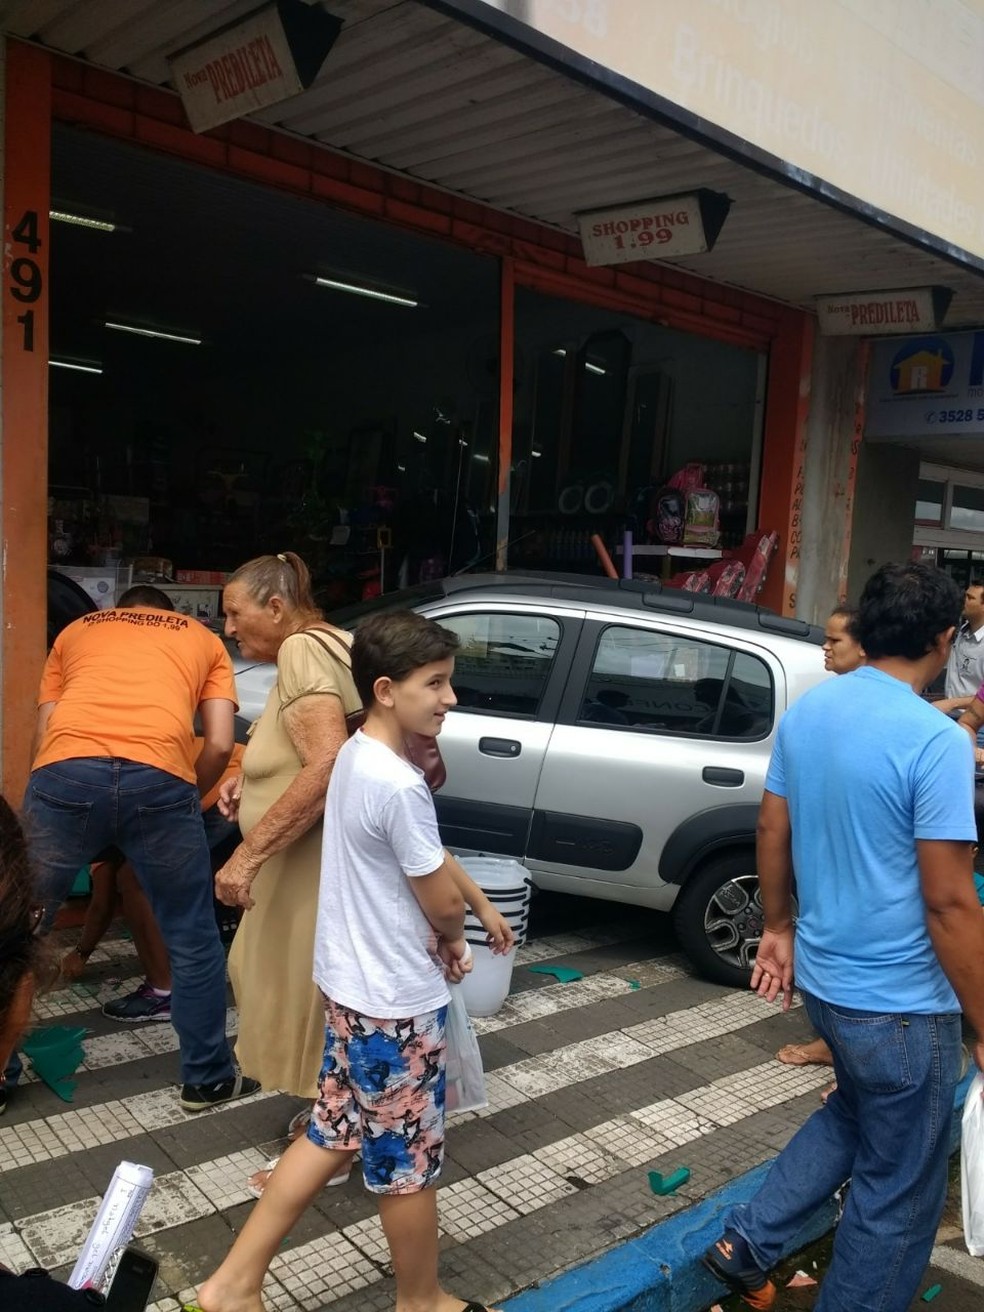 Carro invadiu loja de R$ 1,99 no Centro de Osvaldo Cruz (Foto: Gilberto do Amaral/Cedida)